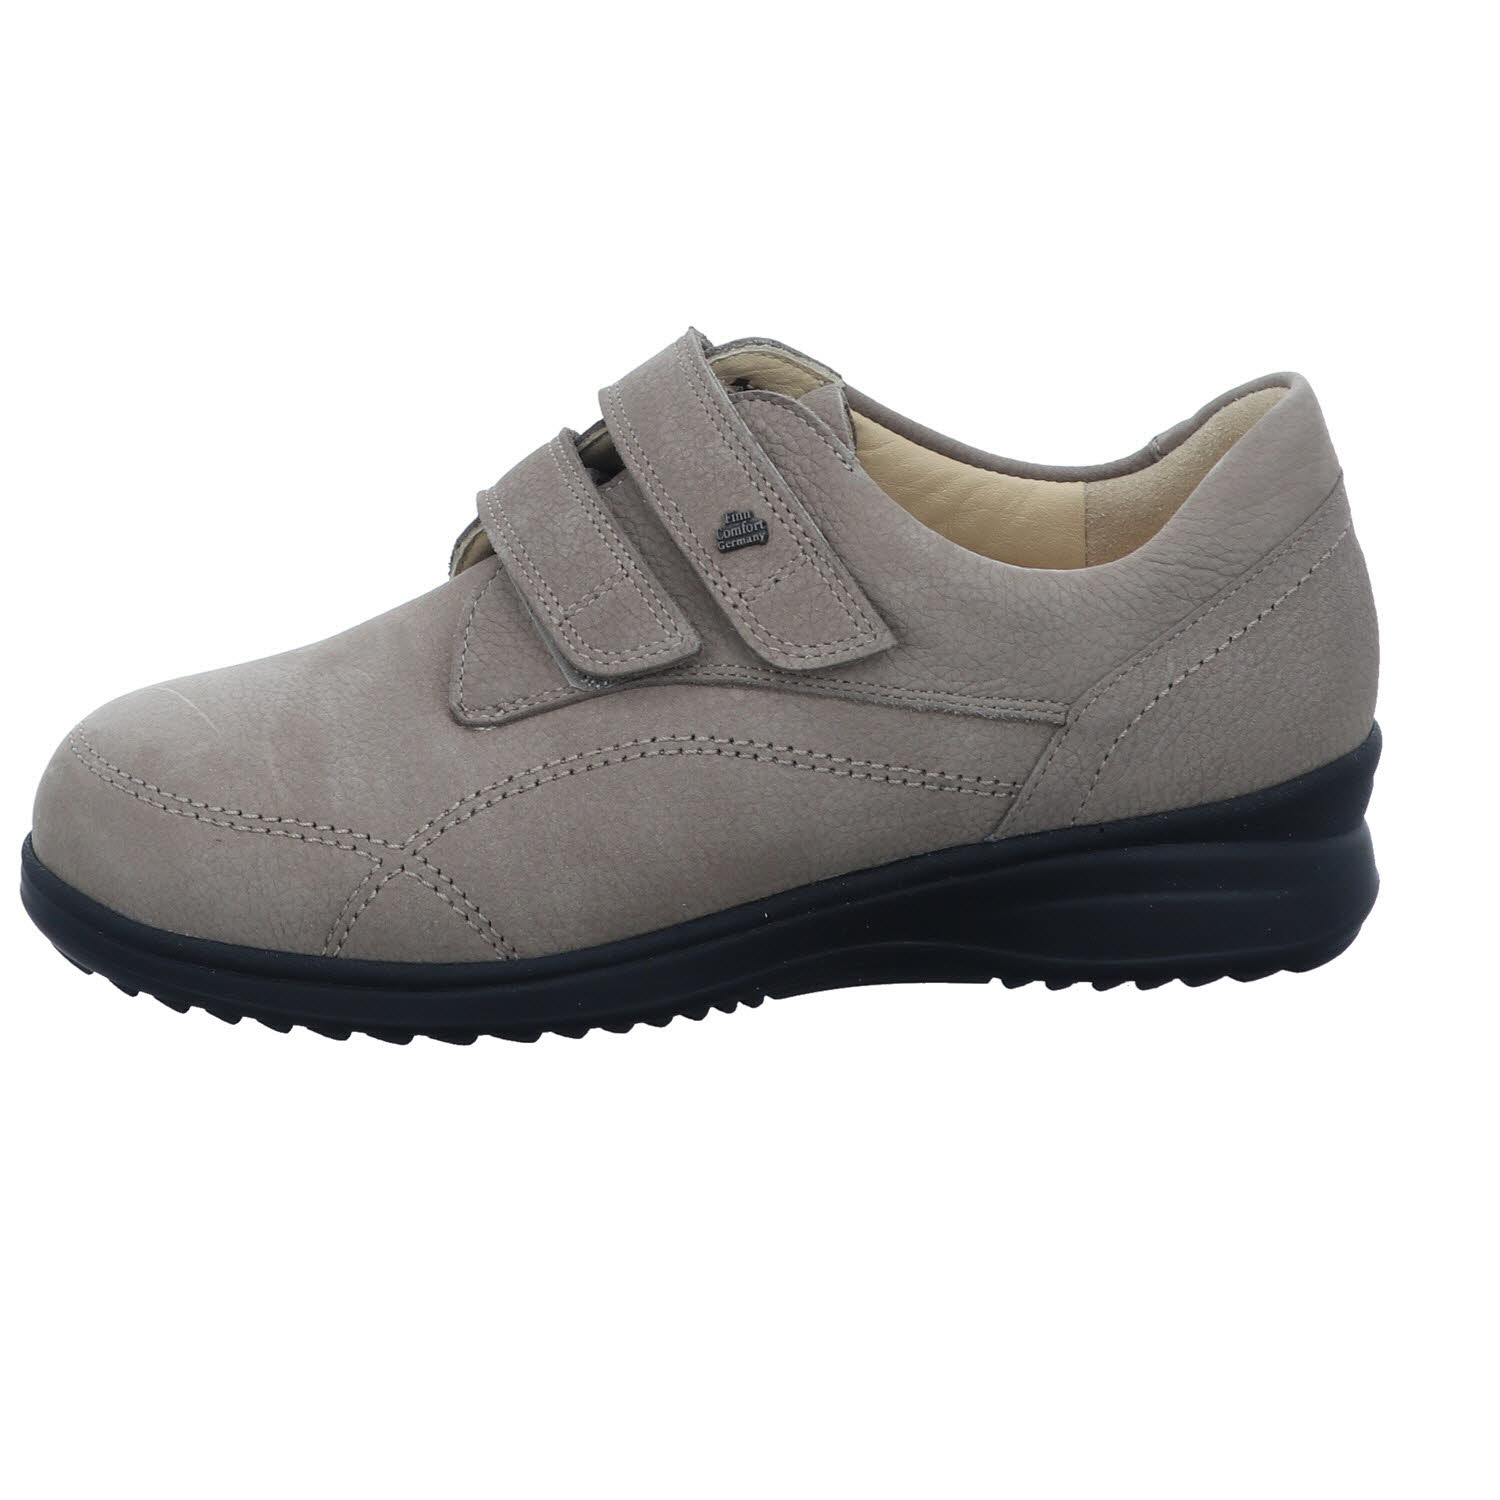 Chaussures Finn Comfort - 96522 (Rock)